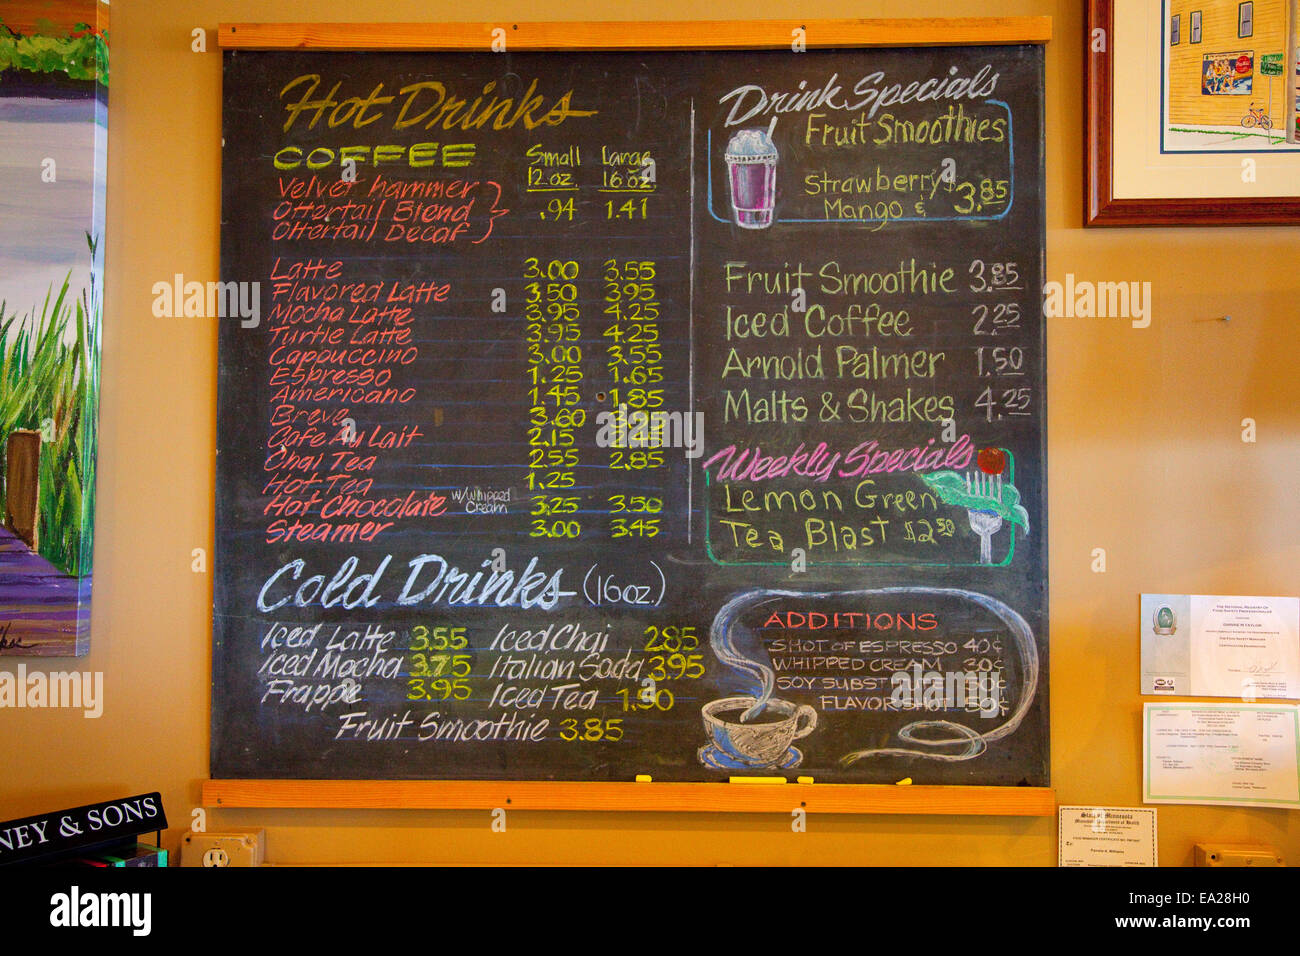 Lavagna colorata listino dei prezzi del caffè e bevande speciali presso la società Williams boutique. Ottertail Minnesota MN USA Foto Stock